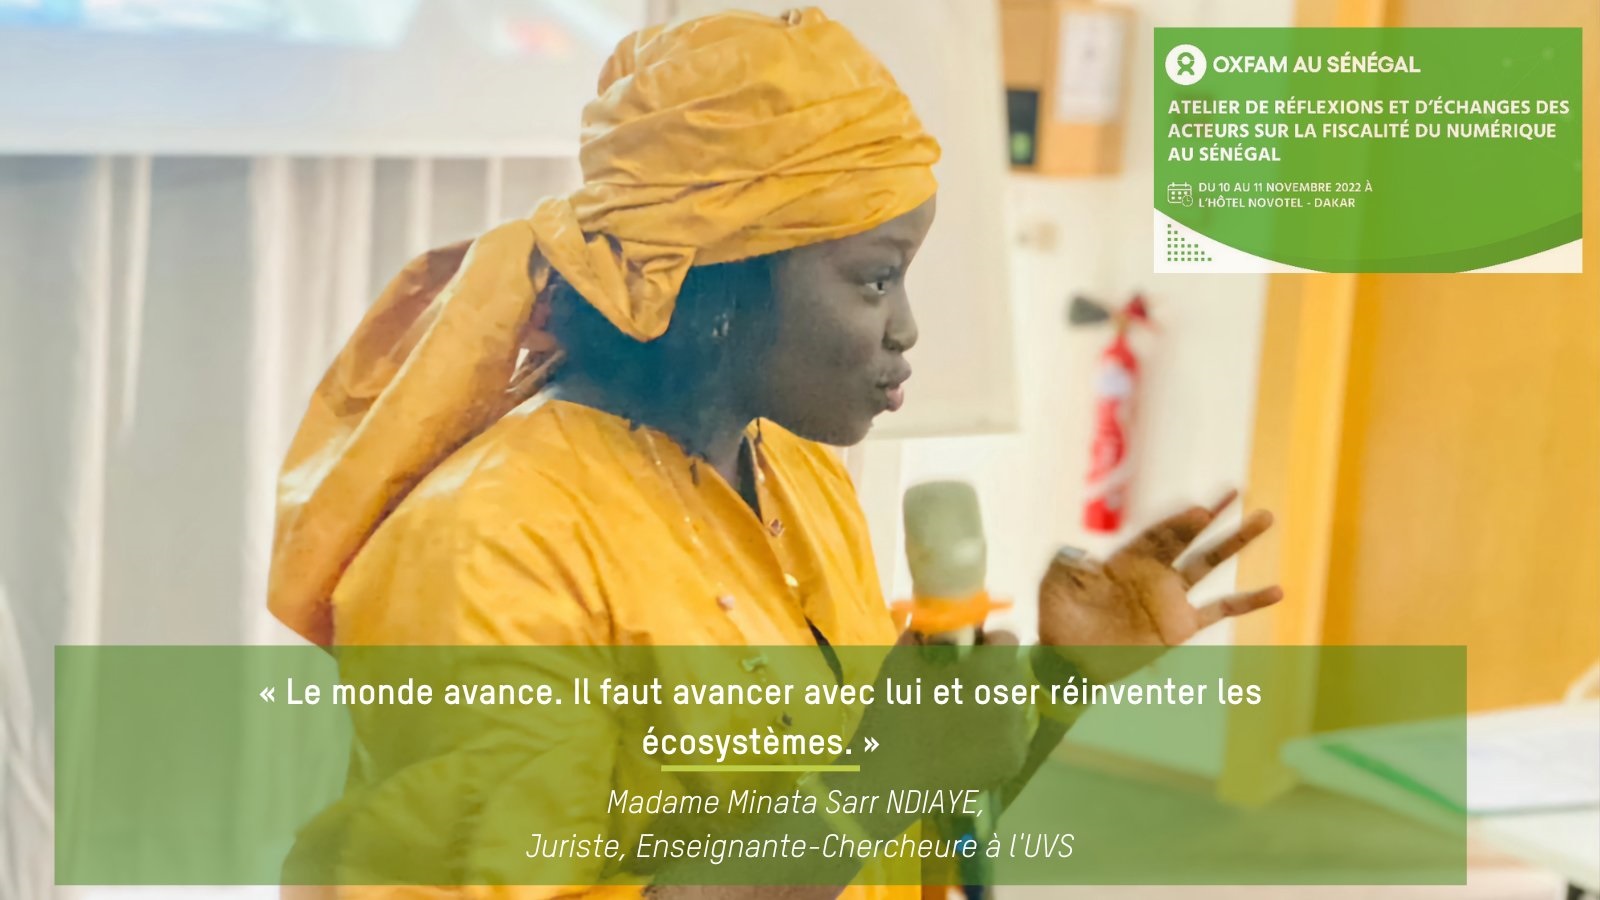 Sénégal: le numérique, «parent pauvre» de la fiscalité (expert)